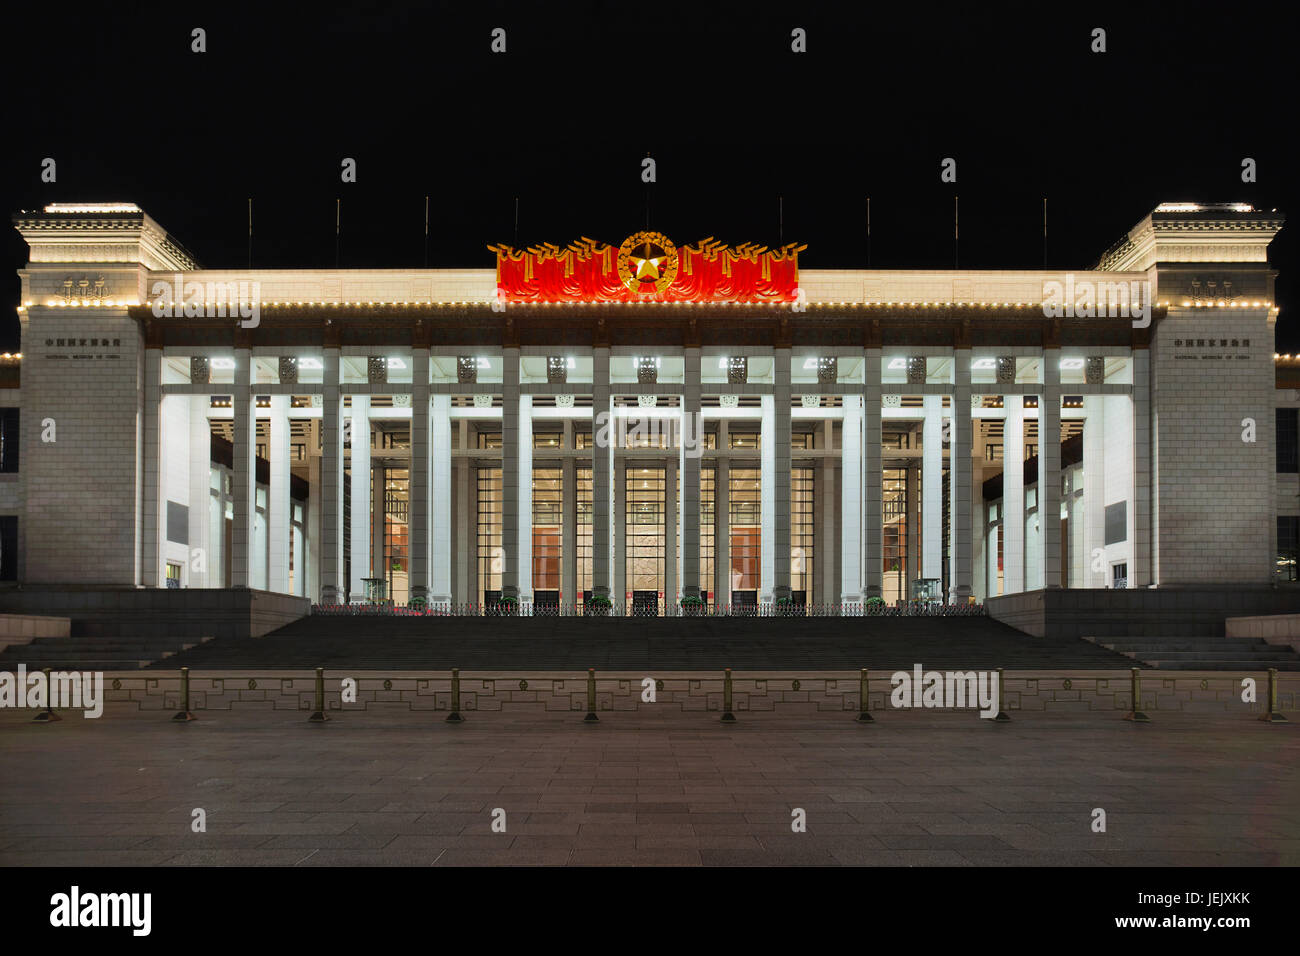 PEKING - 19. APRIL. Nationalmuseum von China. Es befindet sich östlich des Tiananmen-Platzes, seine Aufgabe ist es, über Kunst und Geschichte Chinas zu informieren. Stockfoto